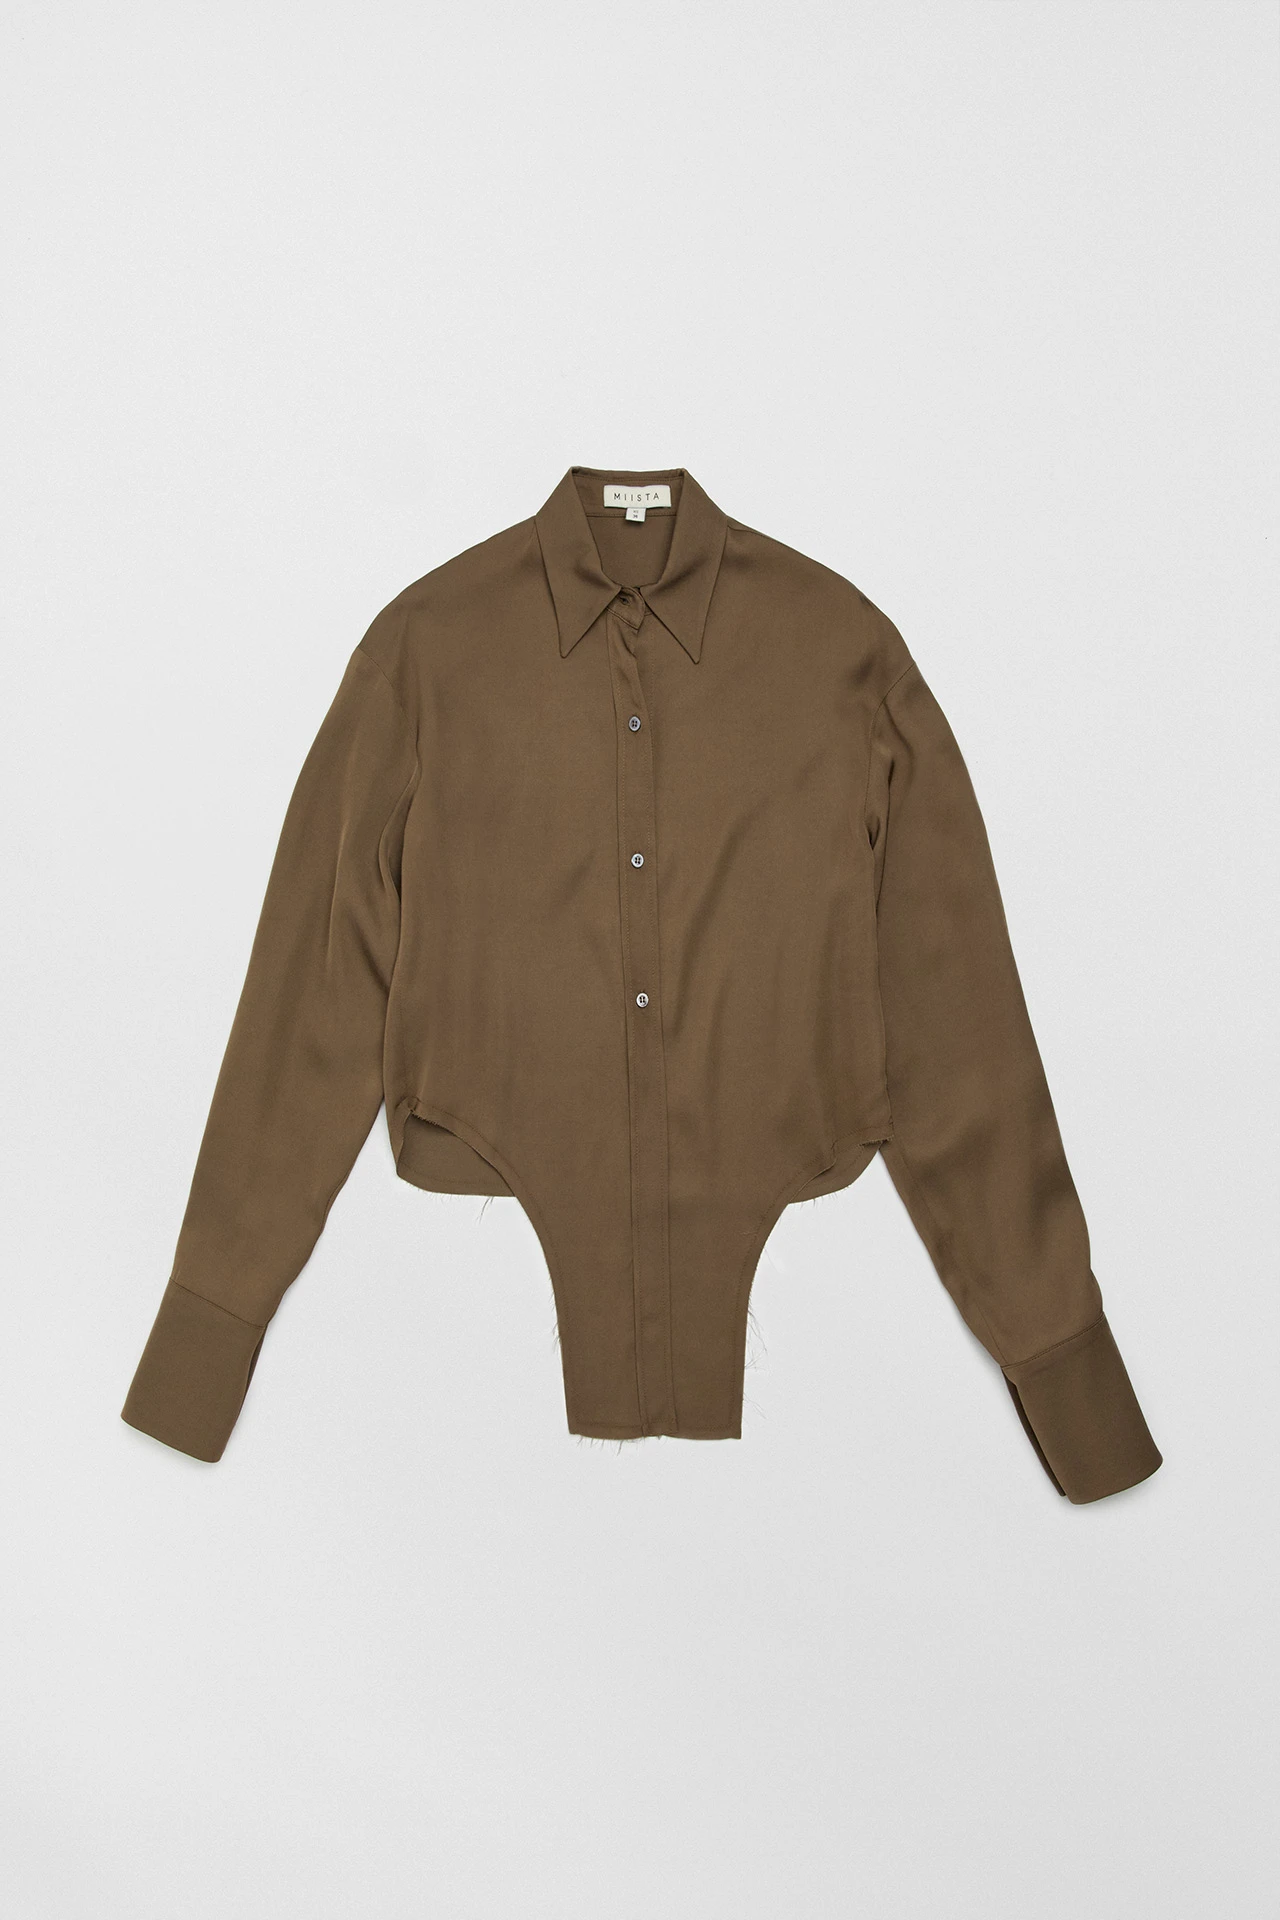 Miista-marques-brown-shirt-01